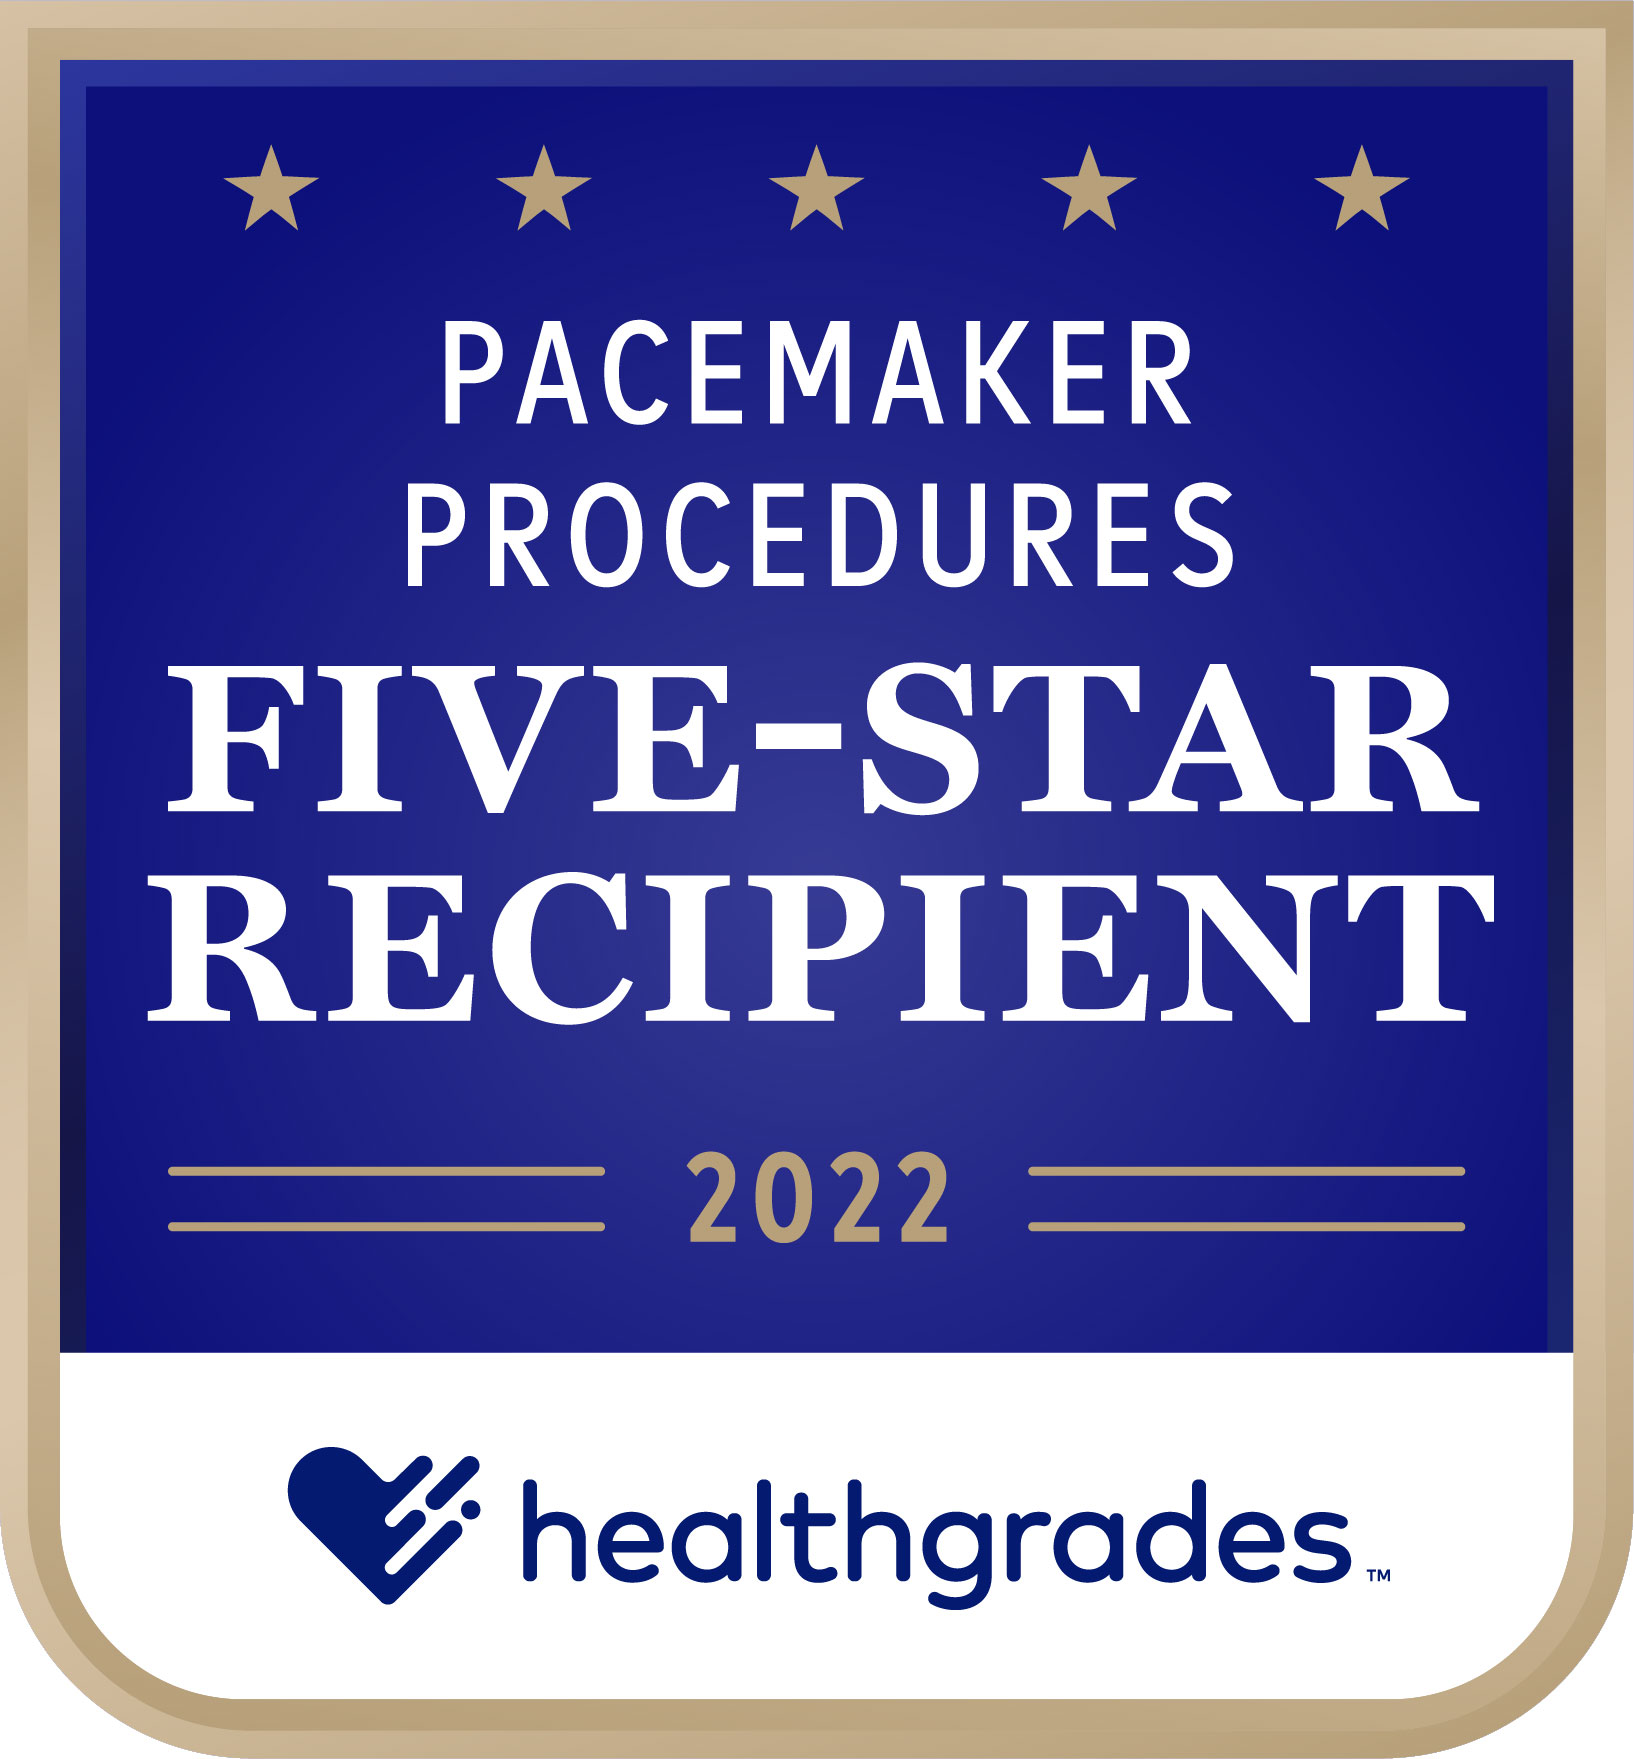 Five-Star_Pacemaker_Procedures_2022 1